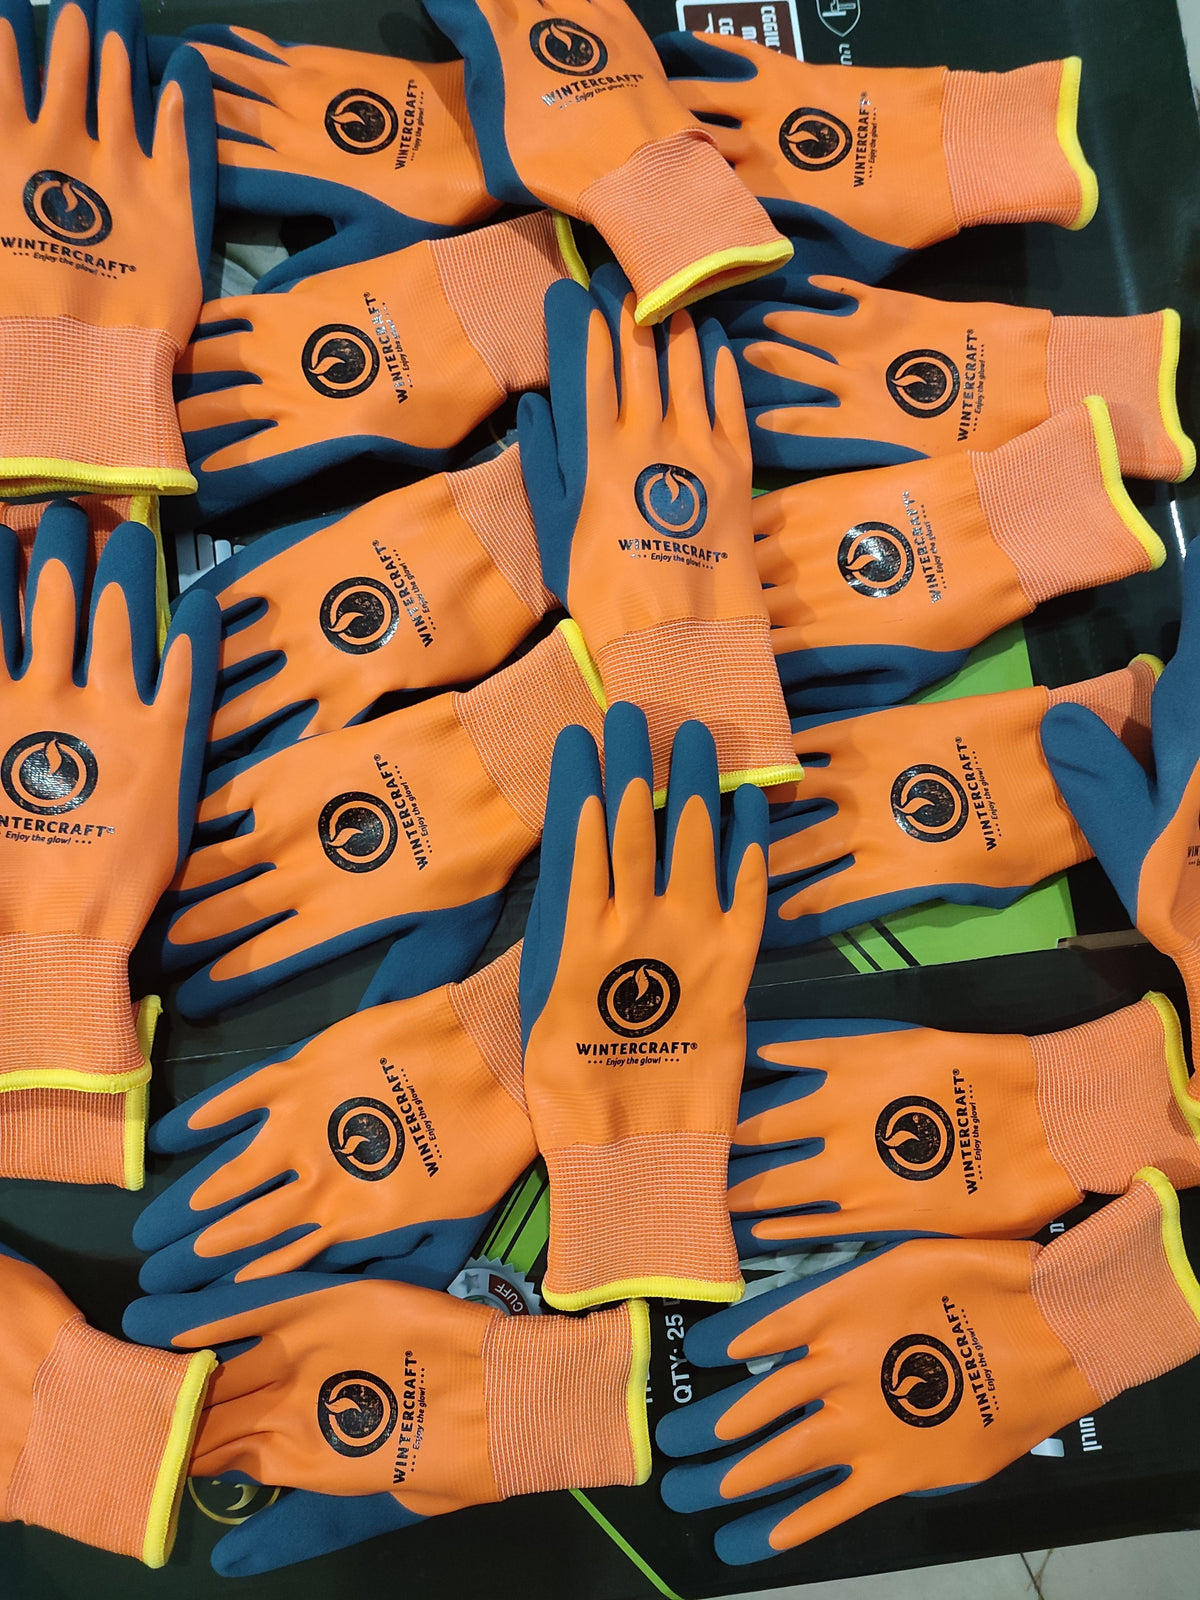 EZ Grip Gloves